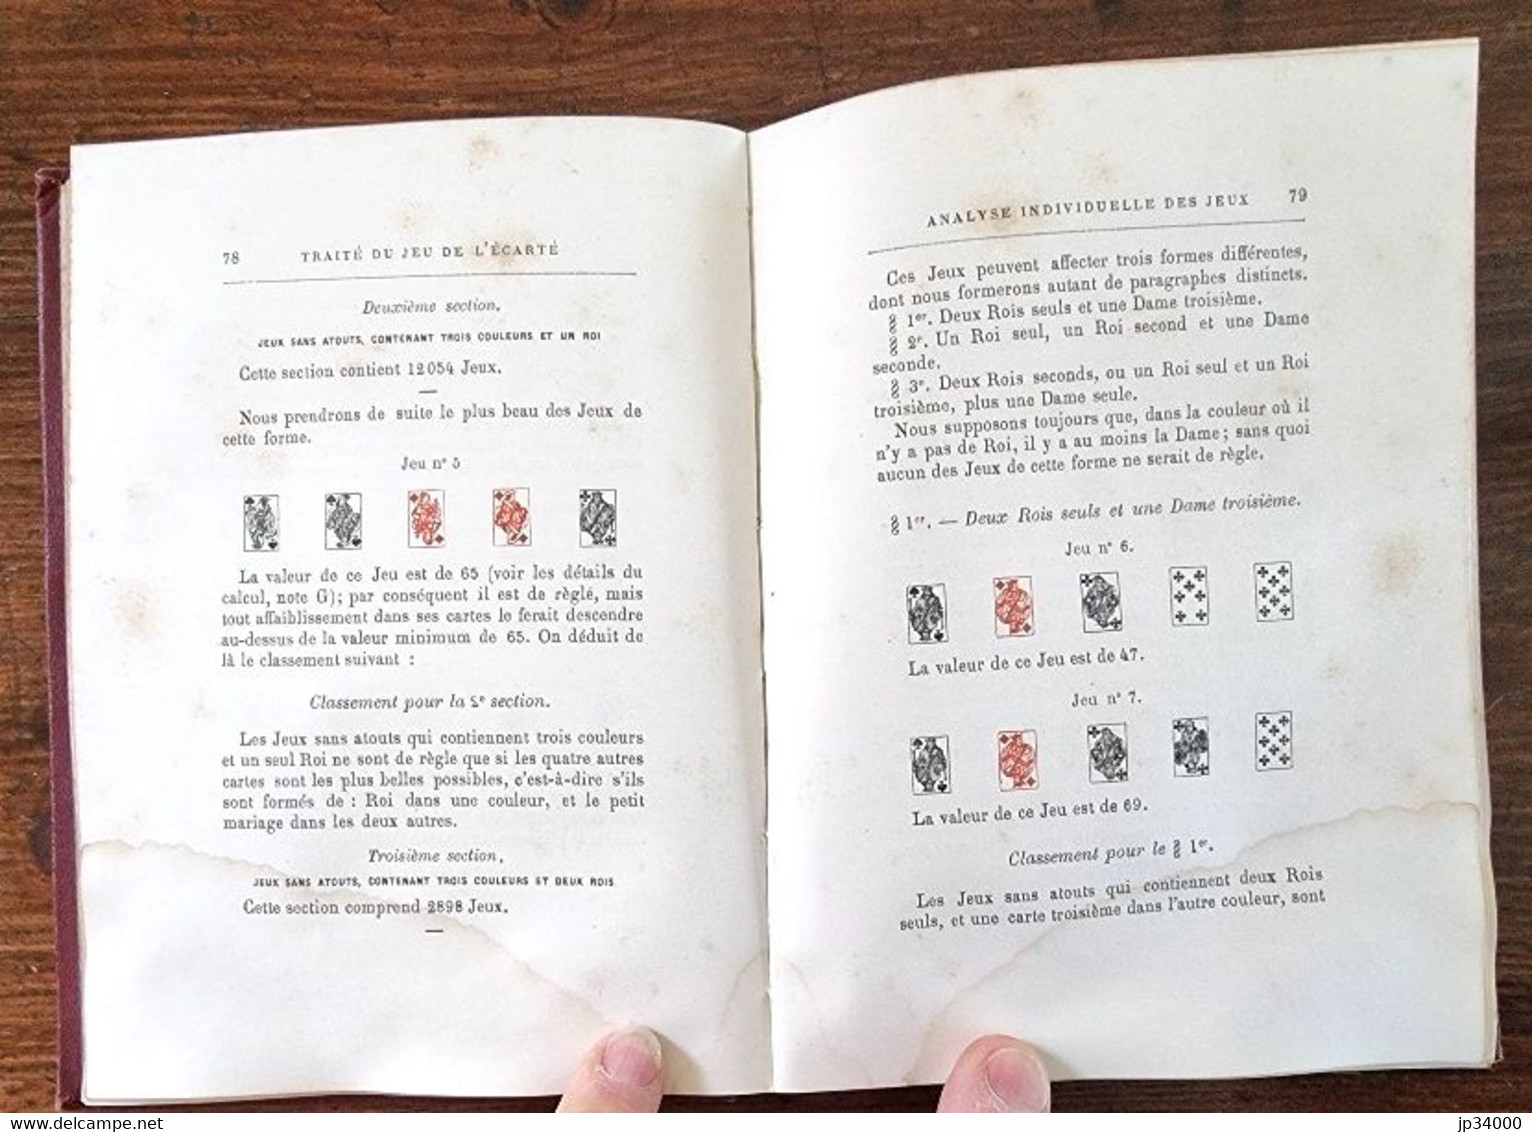 DORMOY Emile - Traité mathématique de l'Ecarté. (1887) jeux de hasard, cartes.